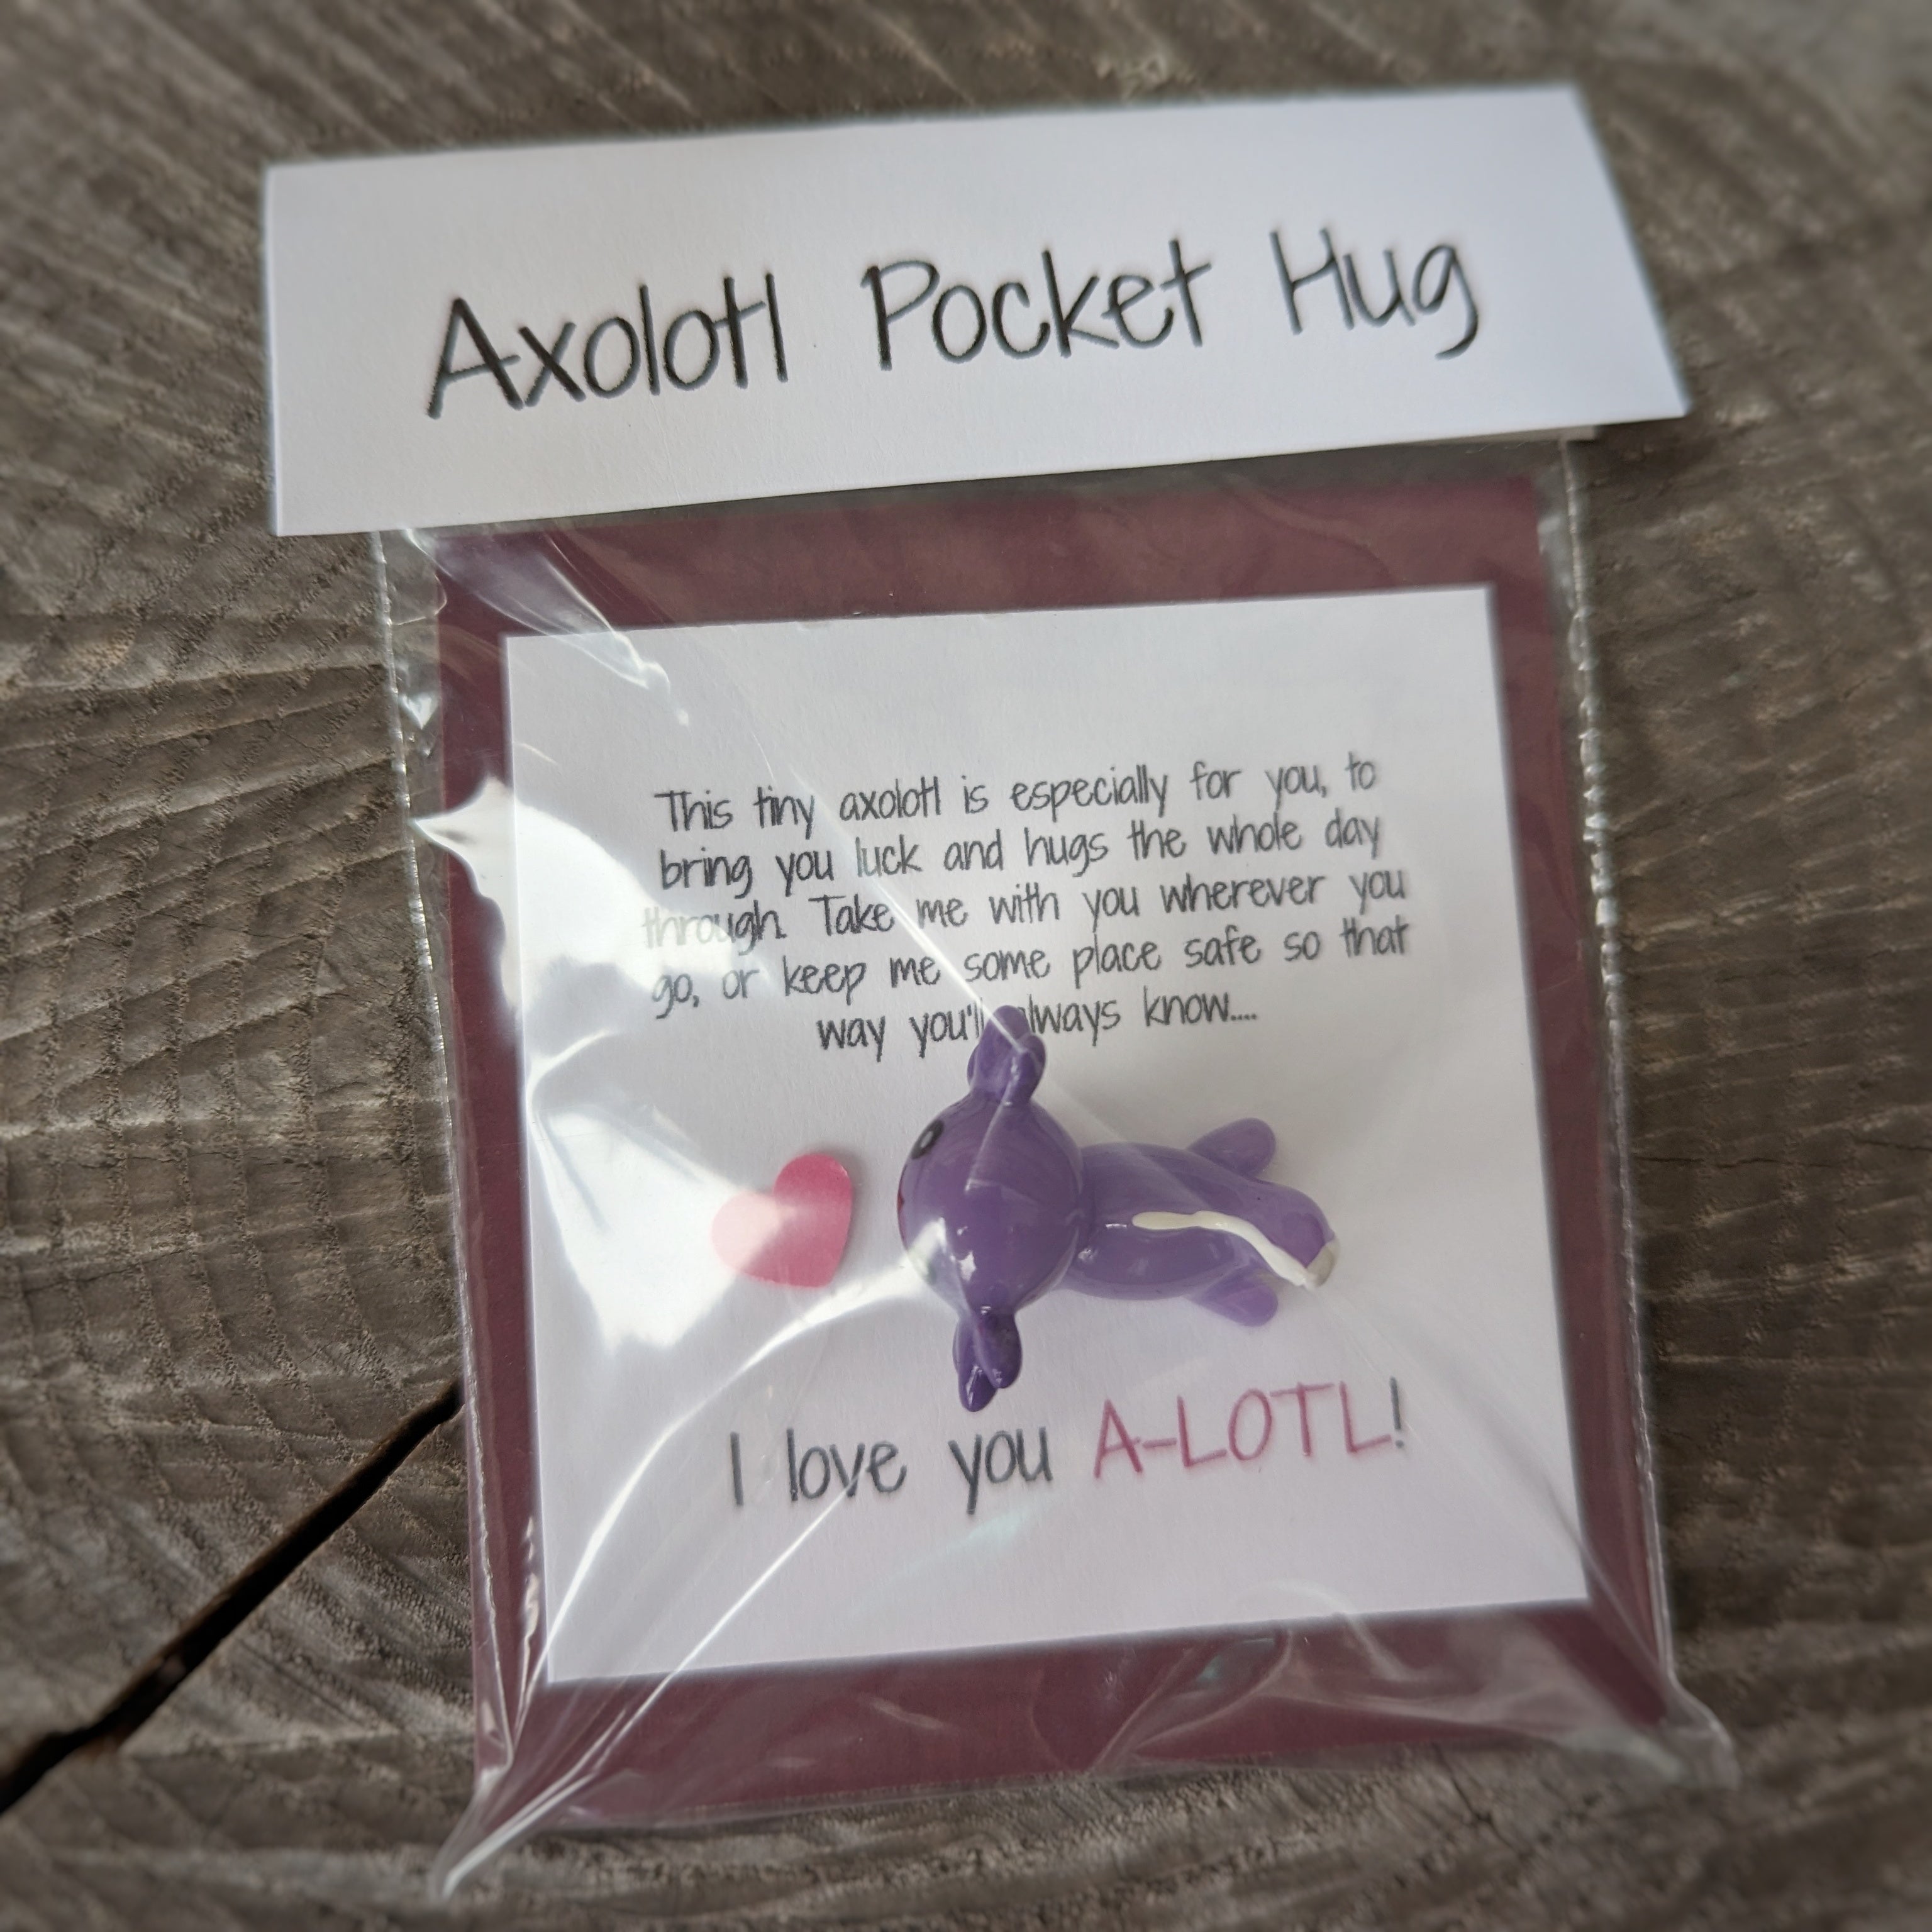 Pocket Hug Axolotl